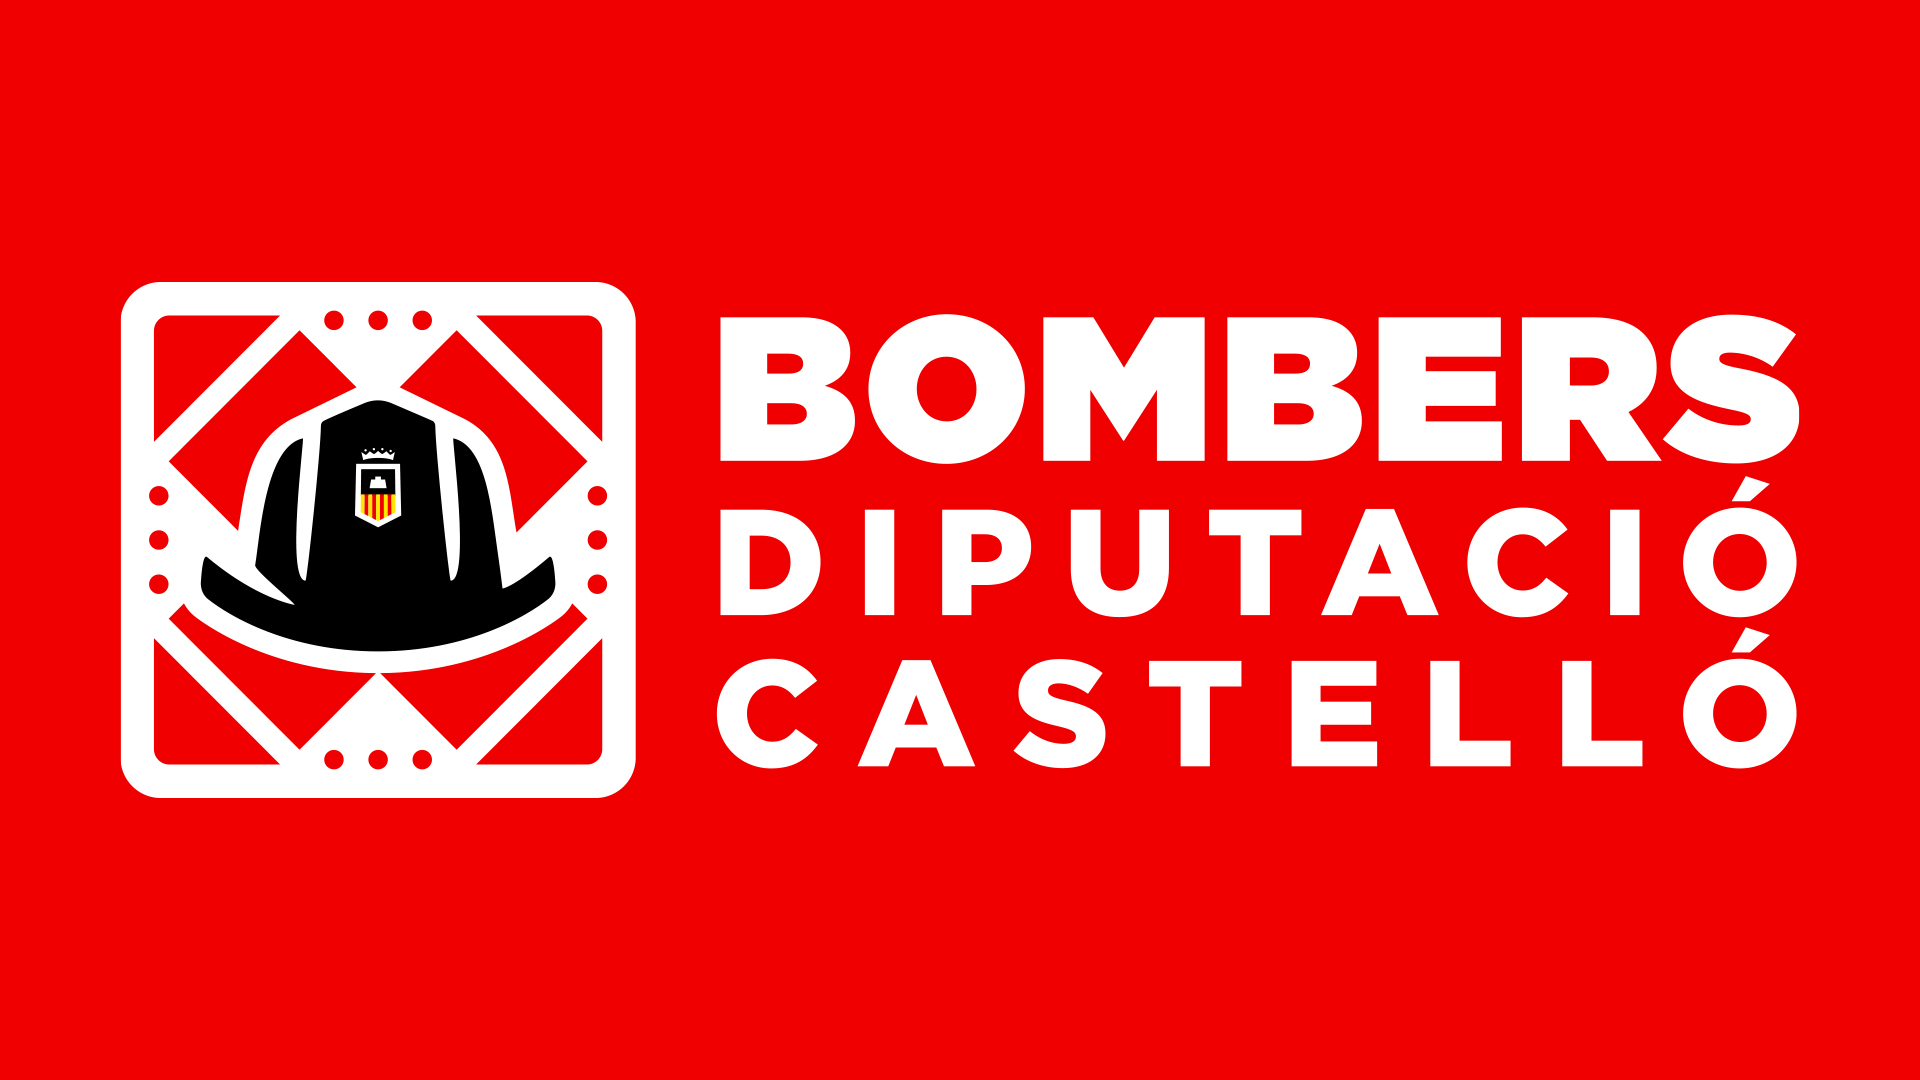 La Diputación de Castellón culmina con un nuevo logotipo y un renovado vestuario la primera fase de modernización del Consorcio de Bomberos